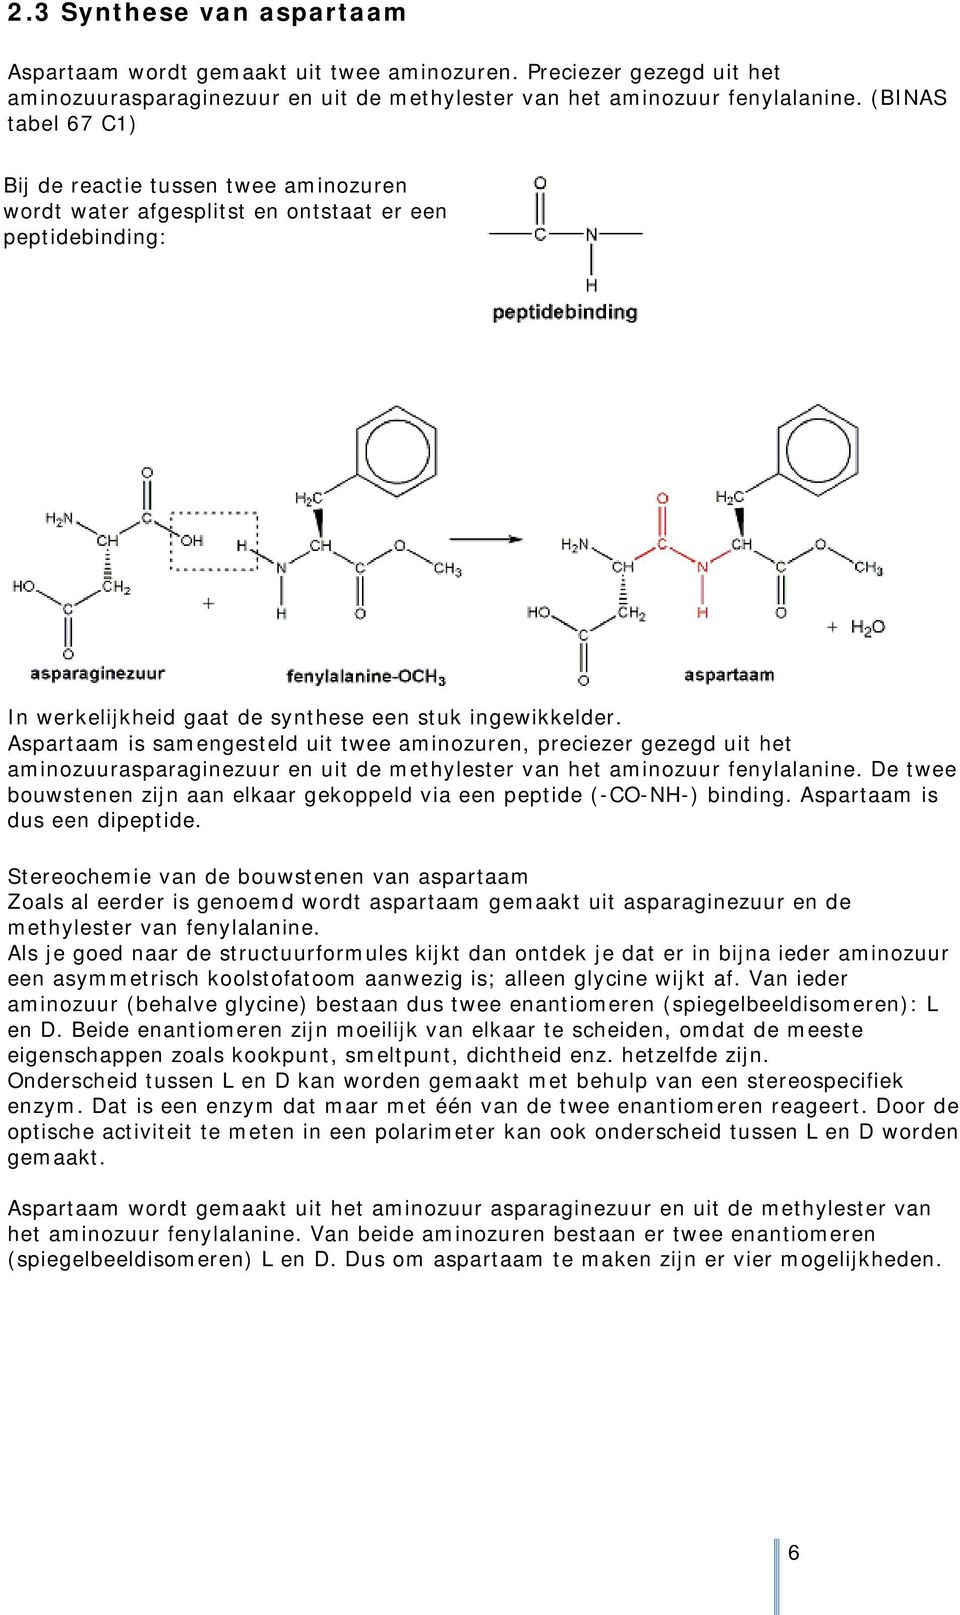 Aspartaam is samengesteld uit twee aminozuren, preciezer gezegd uit het aminozuurasparaginezuur en uit de methylester van het aminozuur fenylalanine.